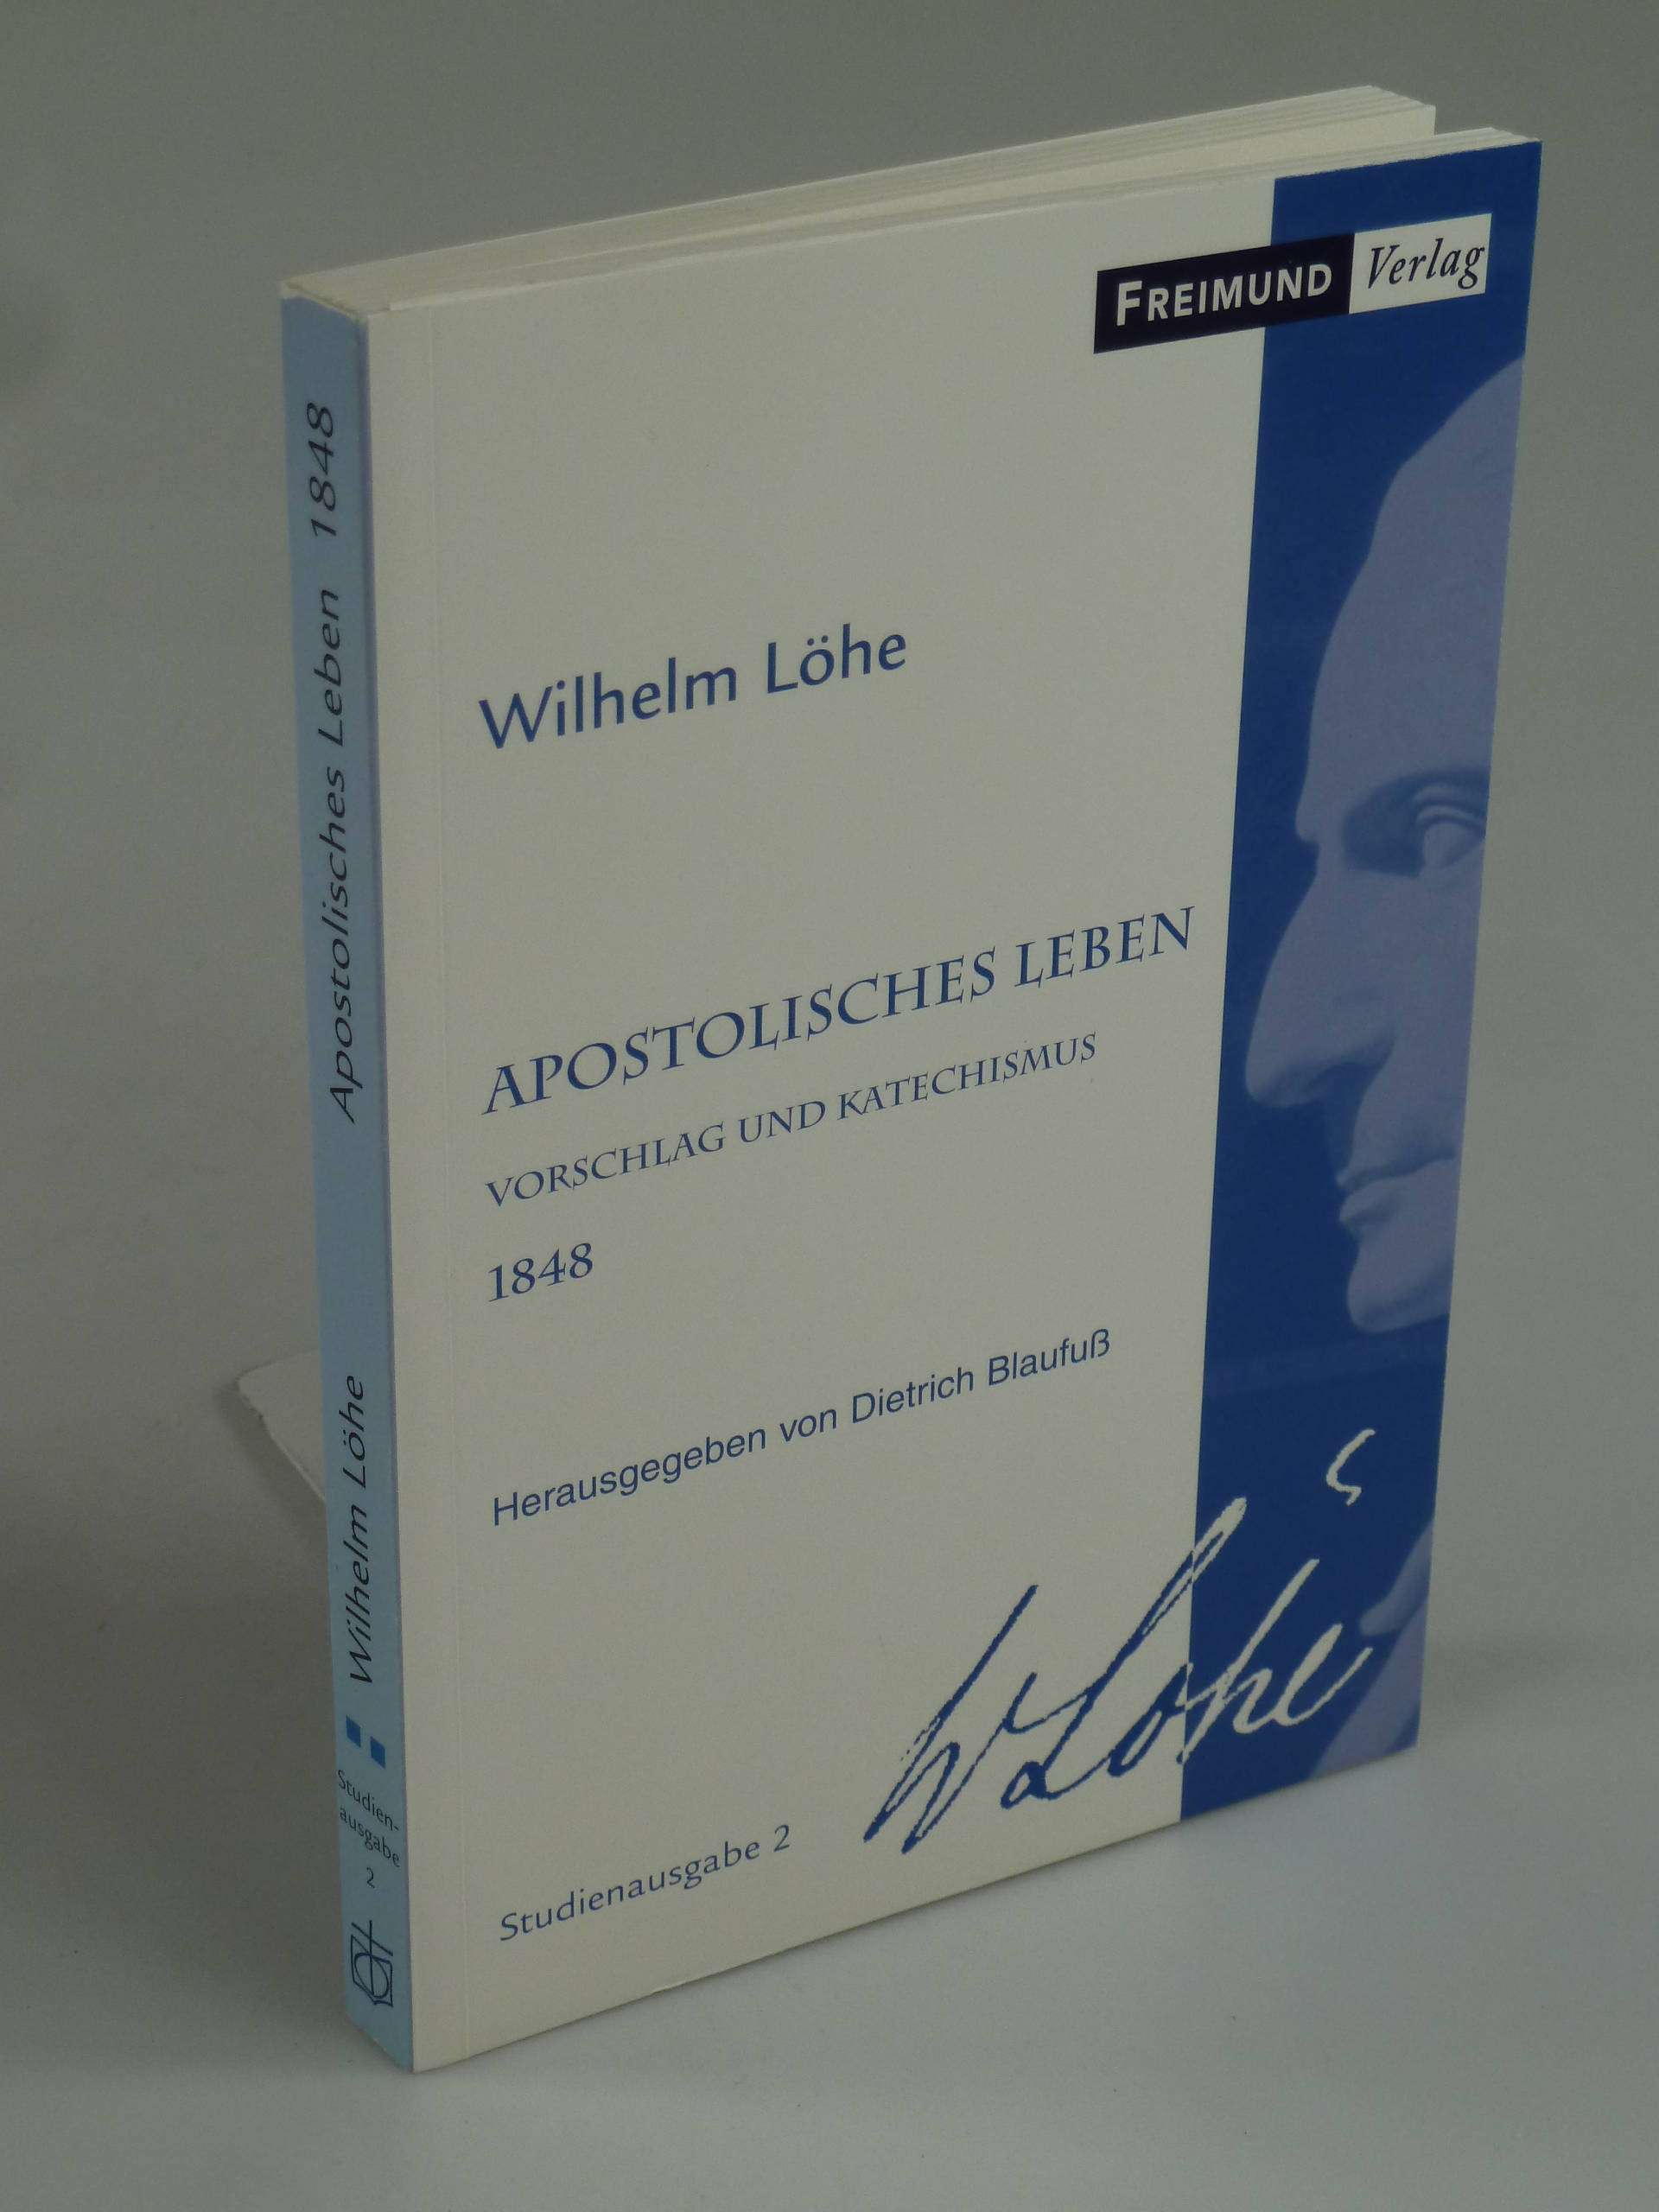 Vorschlag zur Vereinigung lutherischer Christen für apostolisches Leben. - LÖHE, Wilhelm.